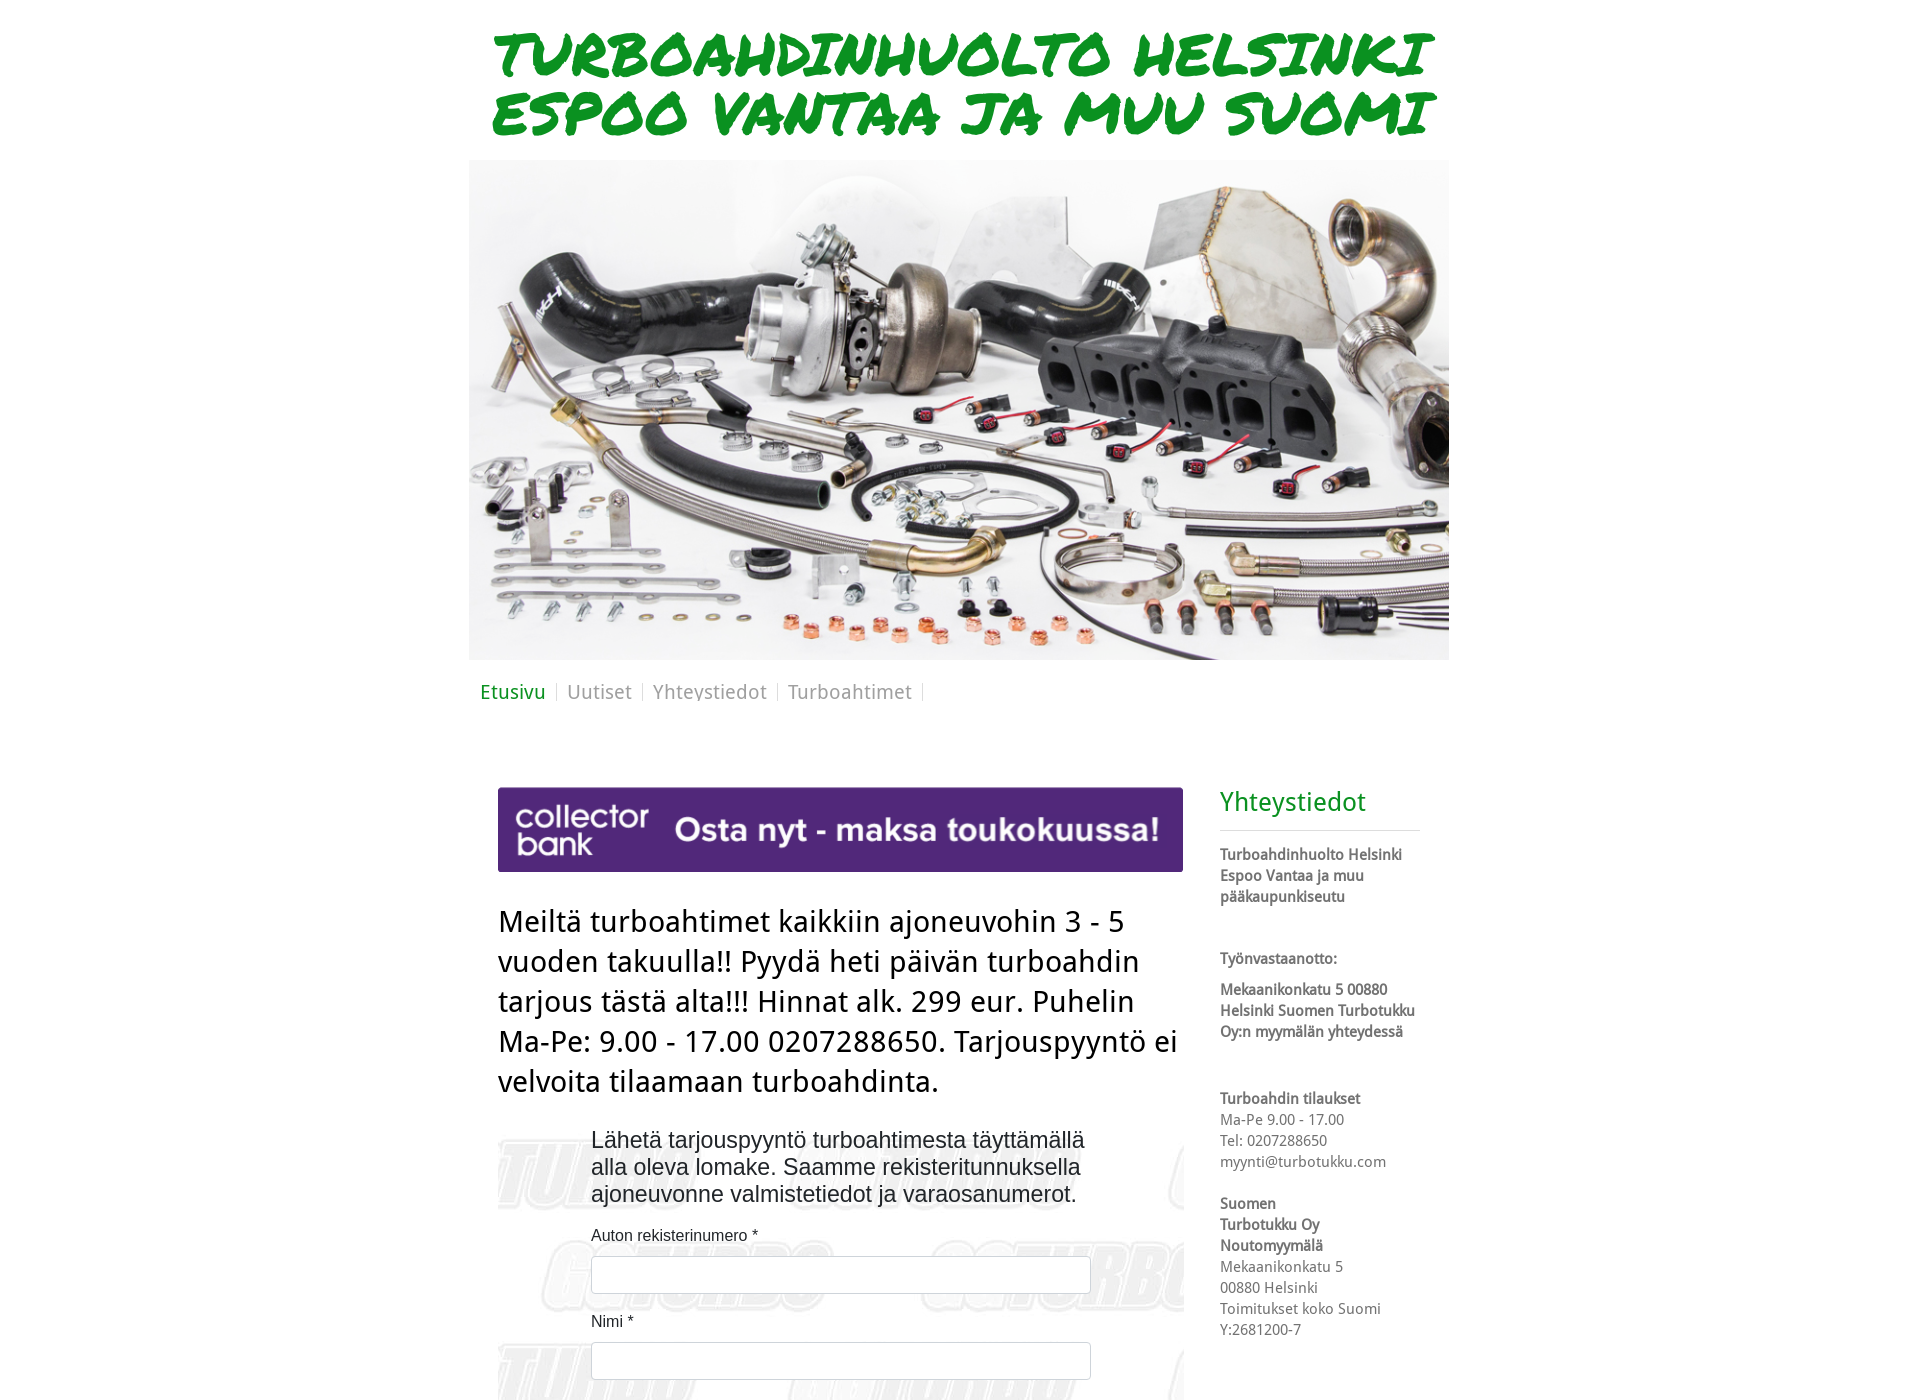 Näyttökuva turbohuoltosipoo.fi